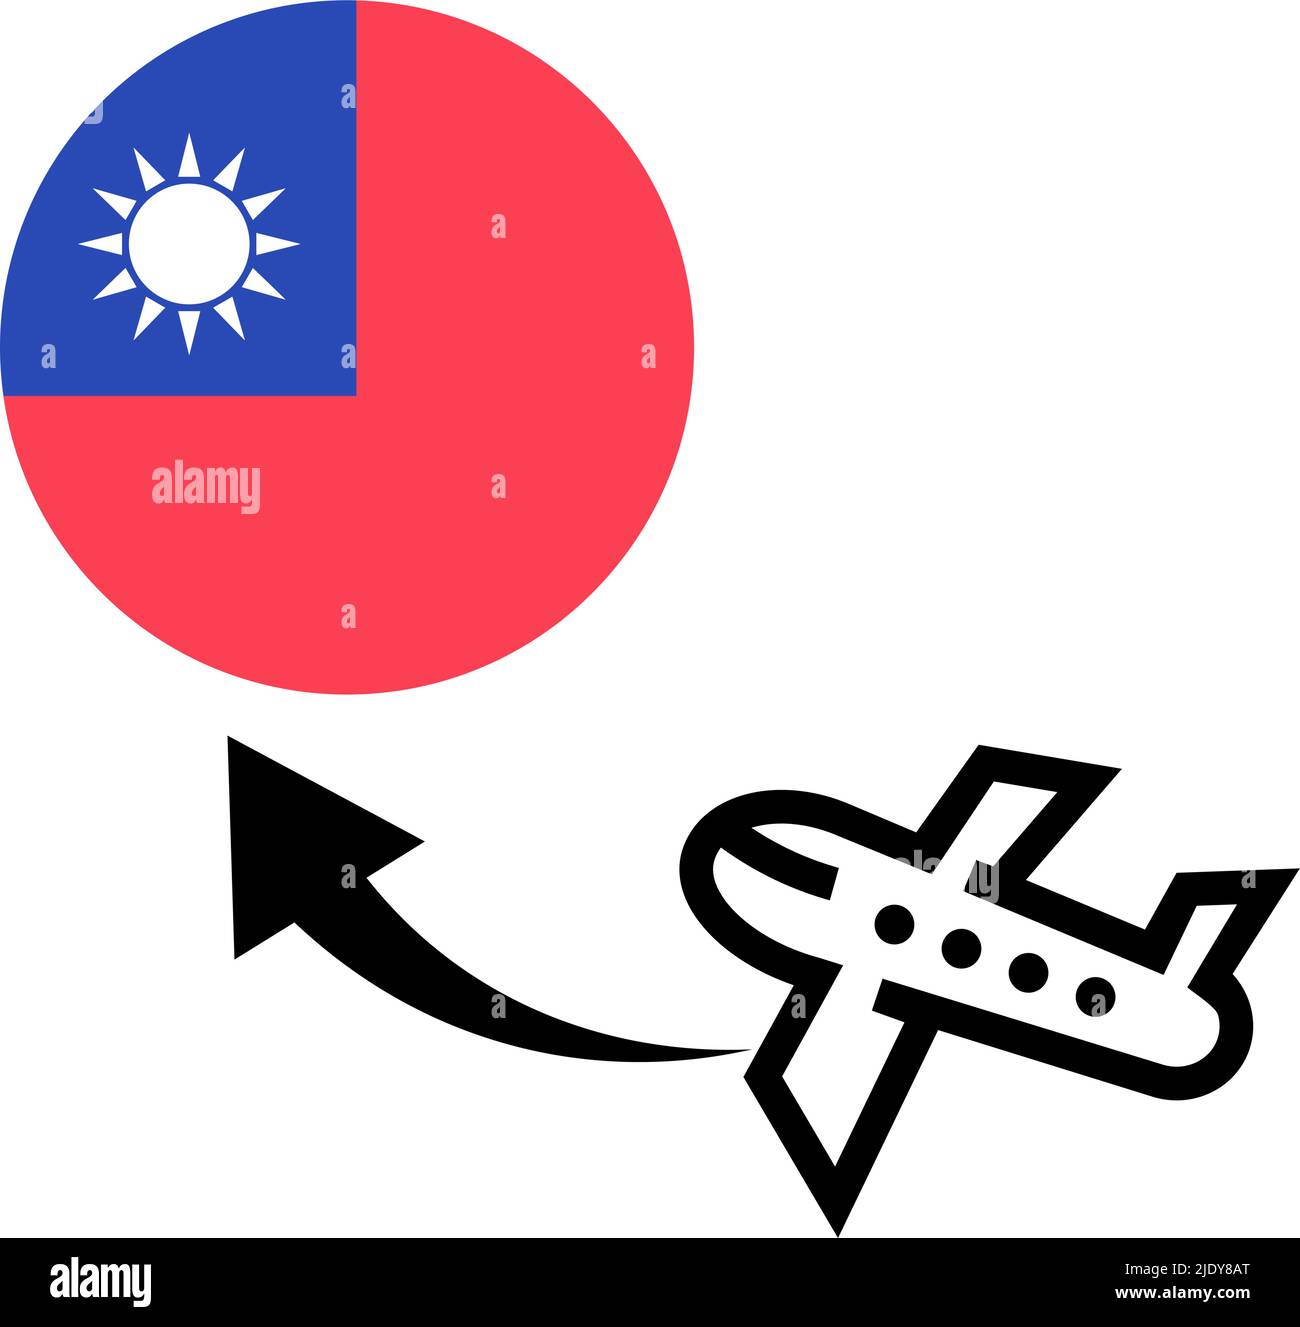 Reise nach Taiwan. Taiwanesische Flagge und ein Flugzeug, das nach Taiwan reist. Bearbeitbarer Vektor. Stock Vektor